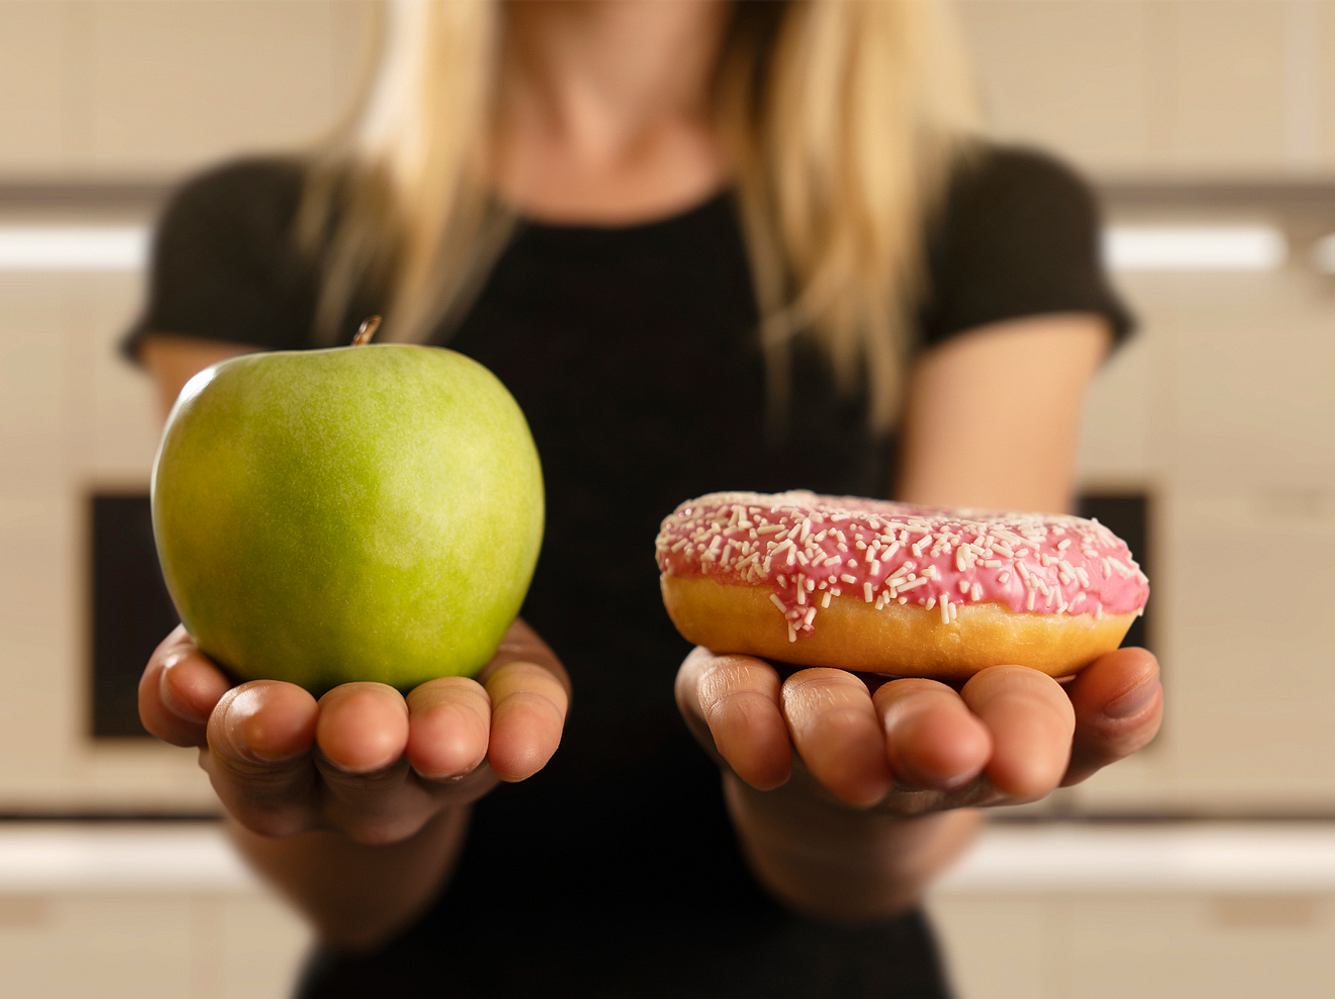 Kalorienarme Snacks helfen effektiv gegen Heißhunger. Wir haben hier die leckersten gesunden Sattmacher.